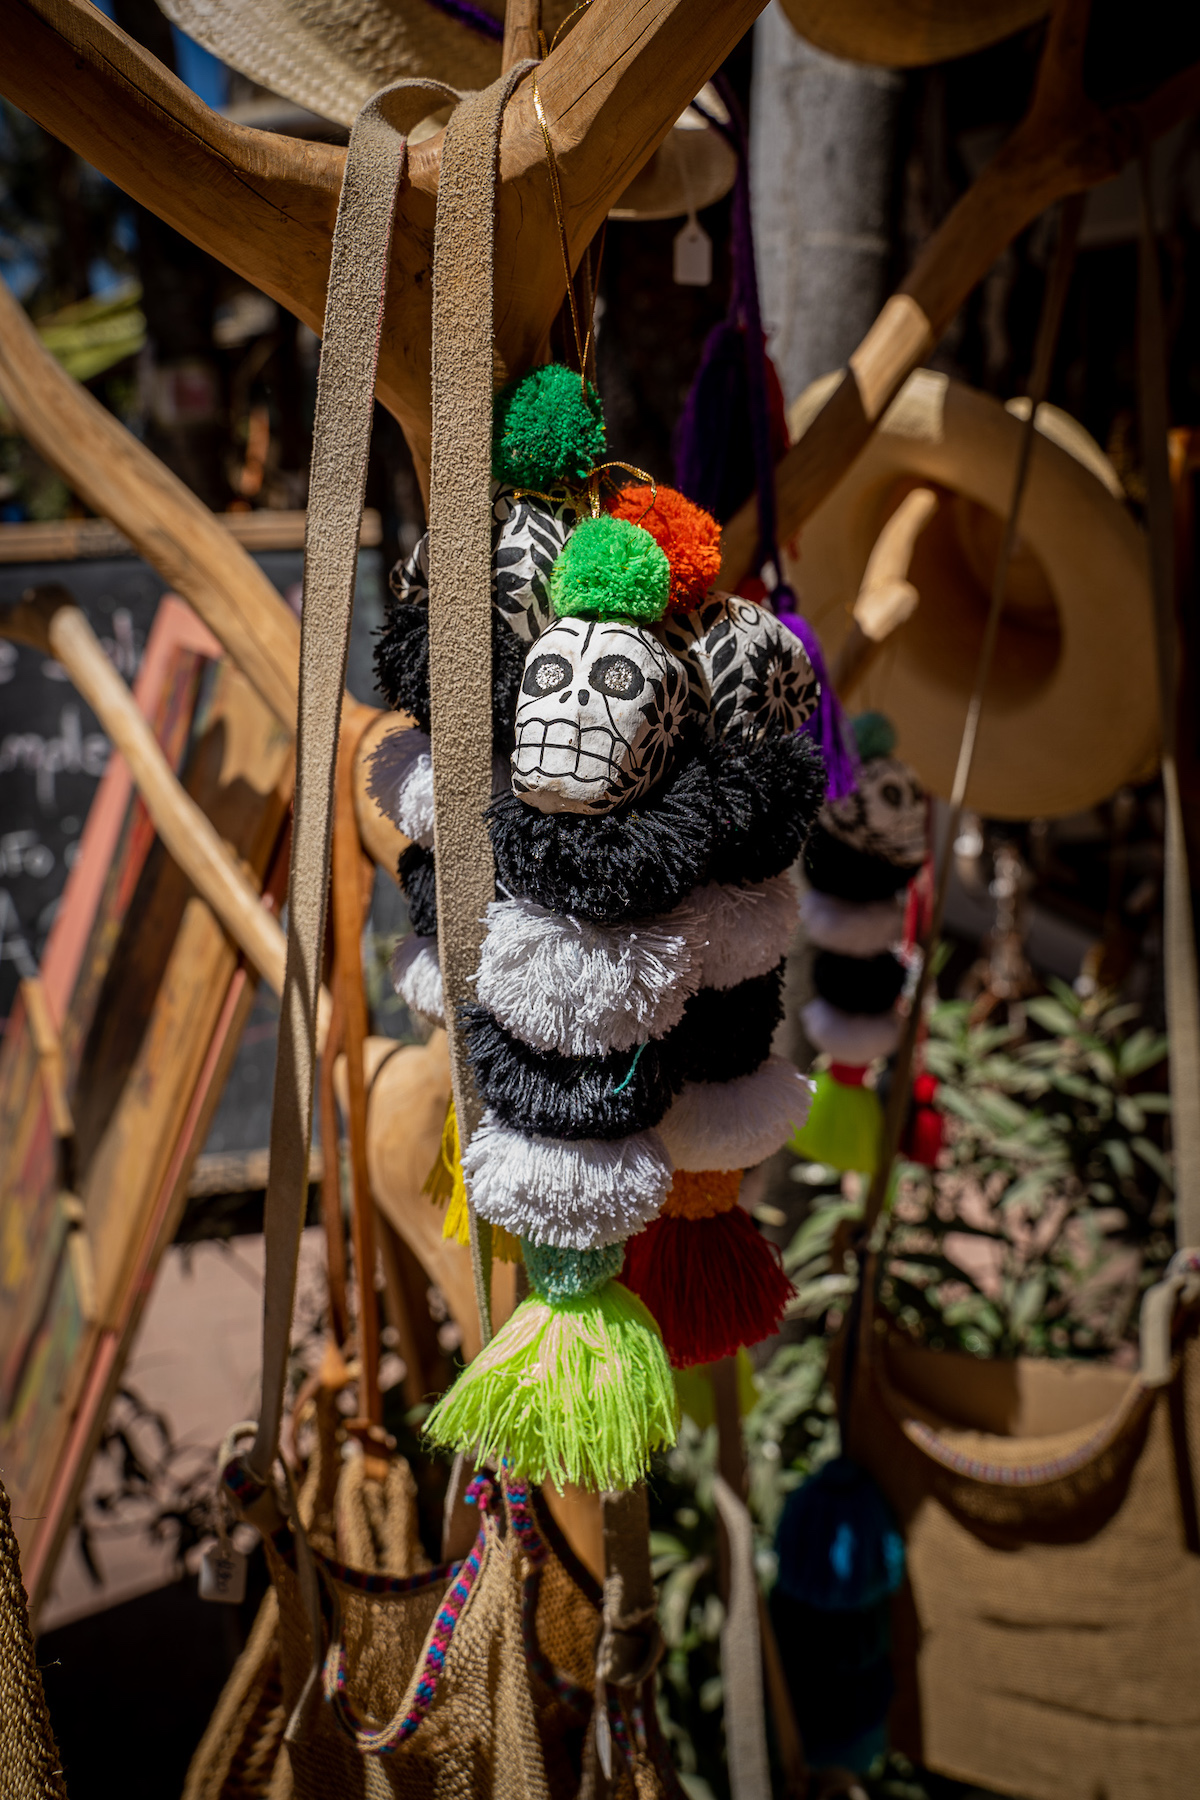 Skull pom pom purse charm from Sayulita Mexico